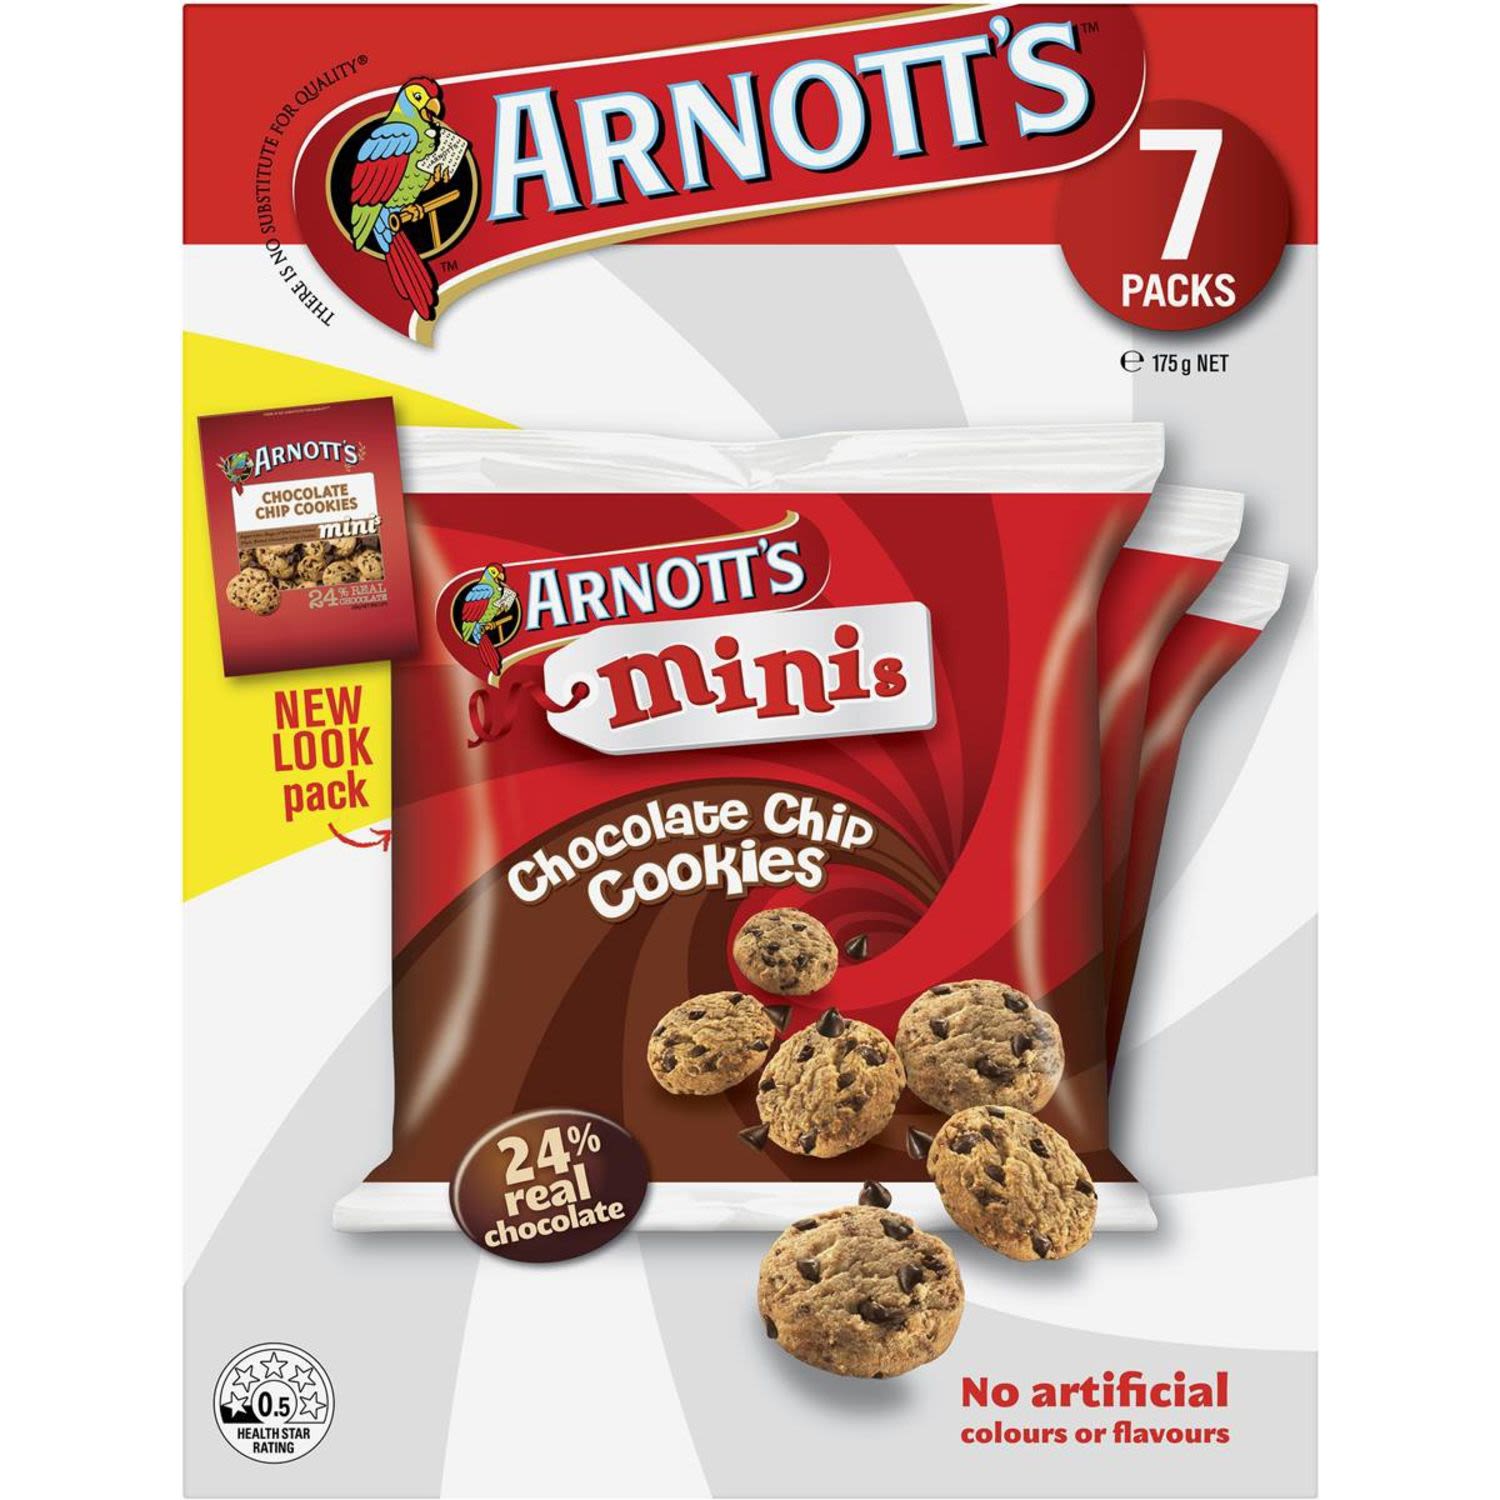 Arnotts Minis Choc Chip Cookies 7pk